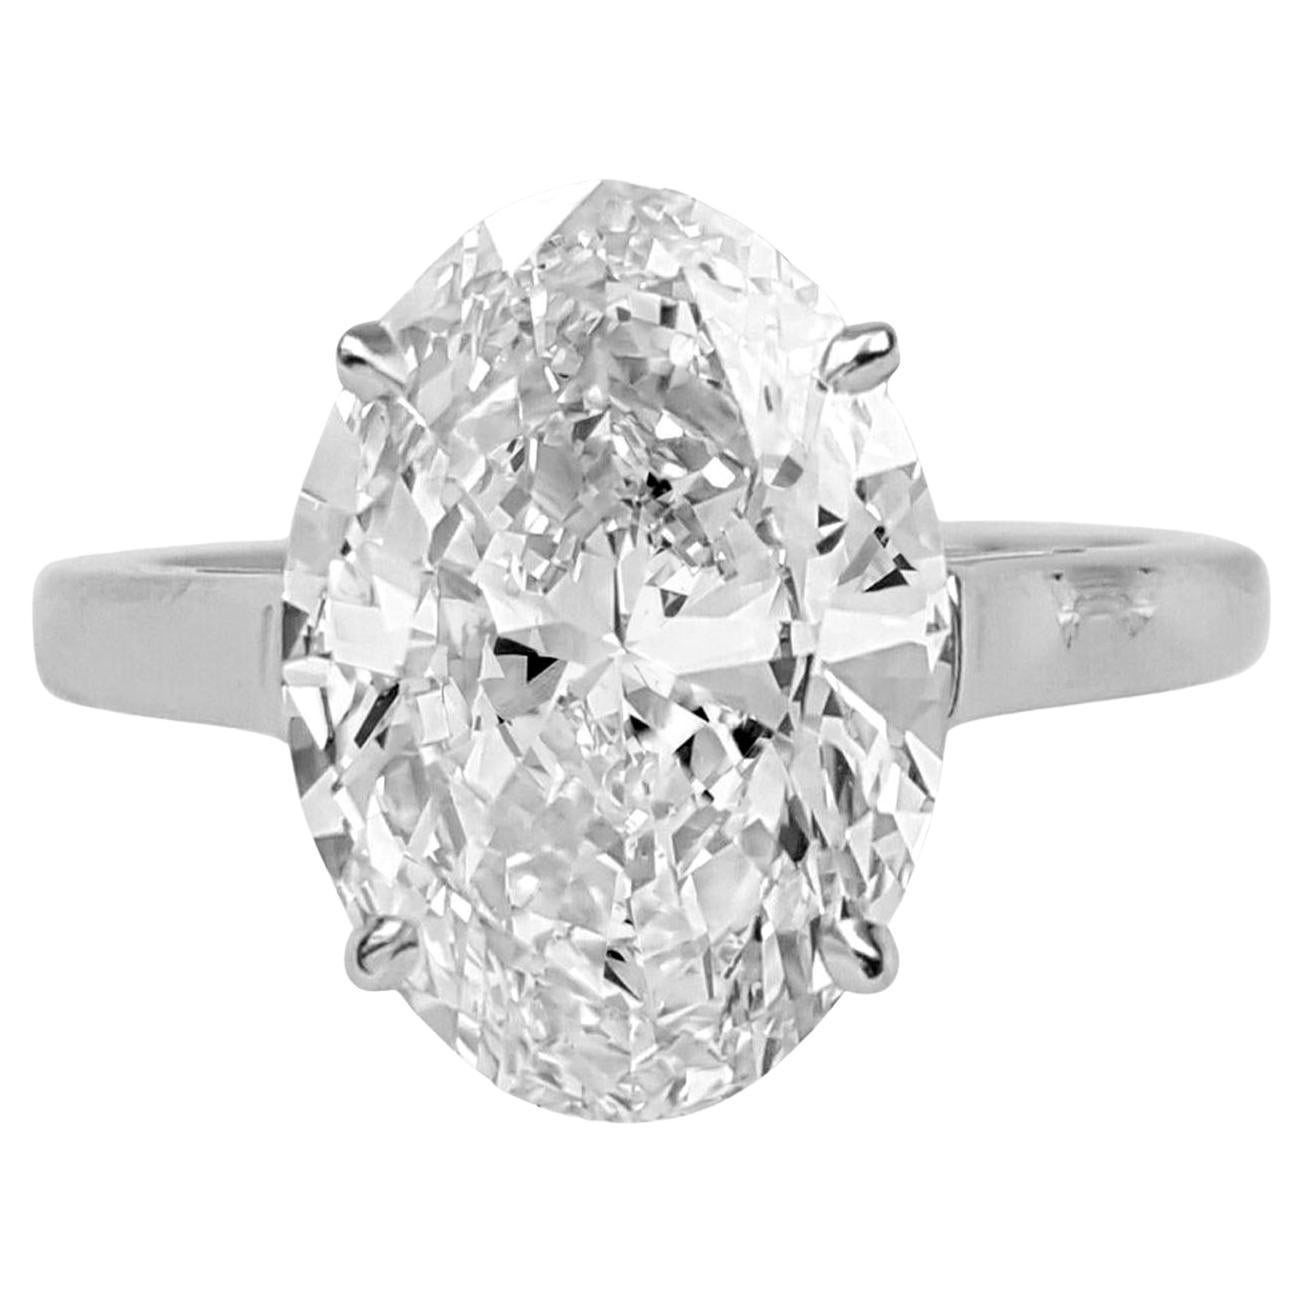 Verlobungsring aus Platin von Tiffany & Co. mit 5 Karat ovalem Diamanten F COLOR VS1 Reinheit